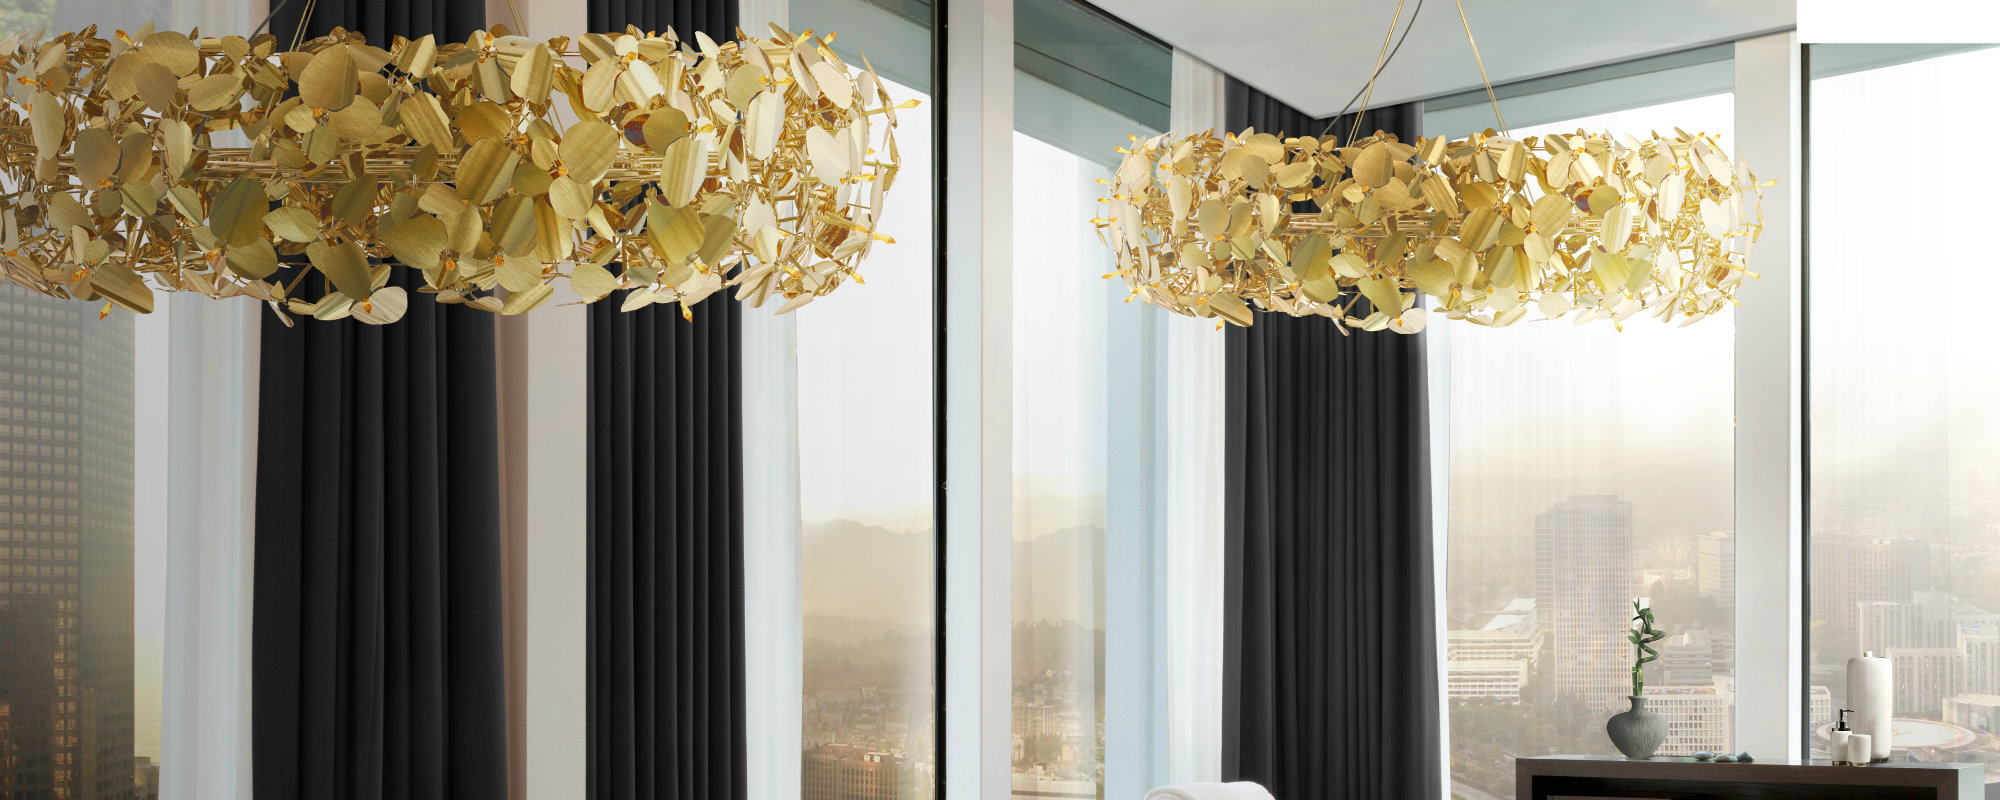 Covet Lighting: Tendencias de lamparas para proyectos lujuosos y elegantes